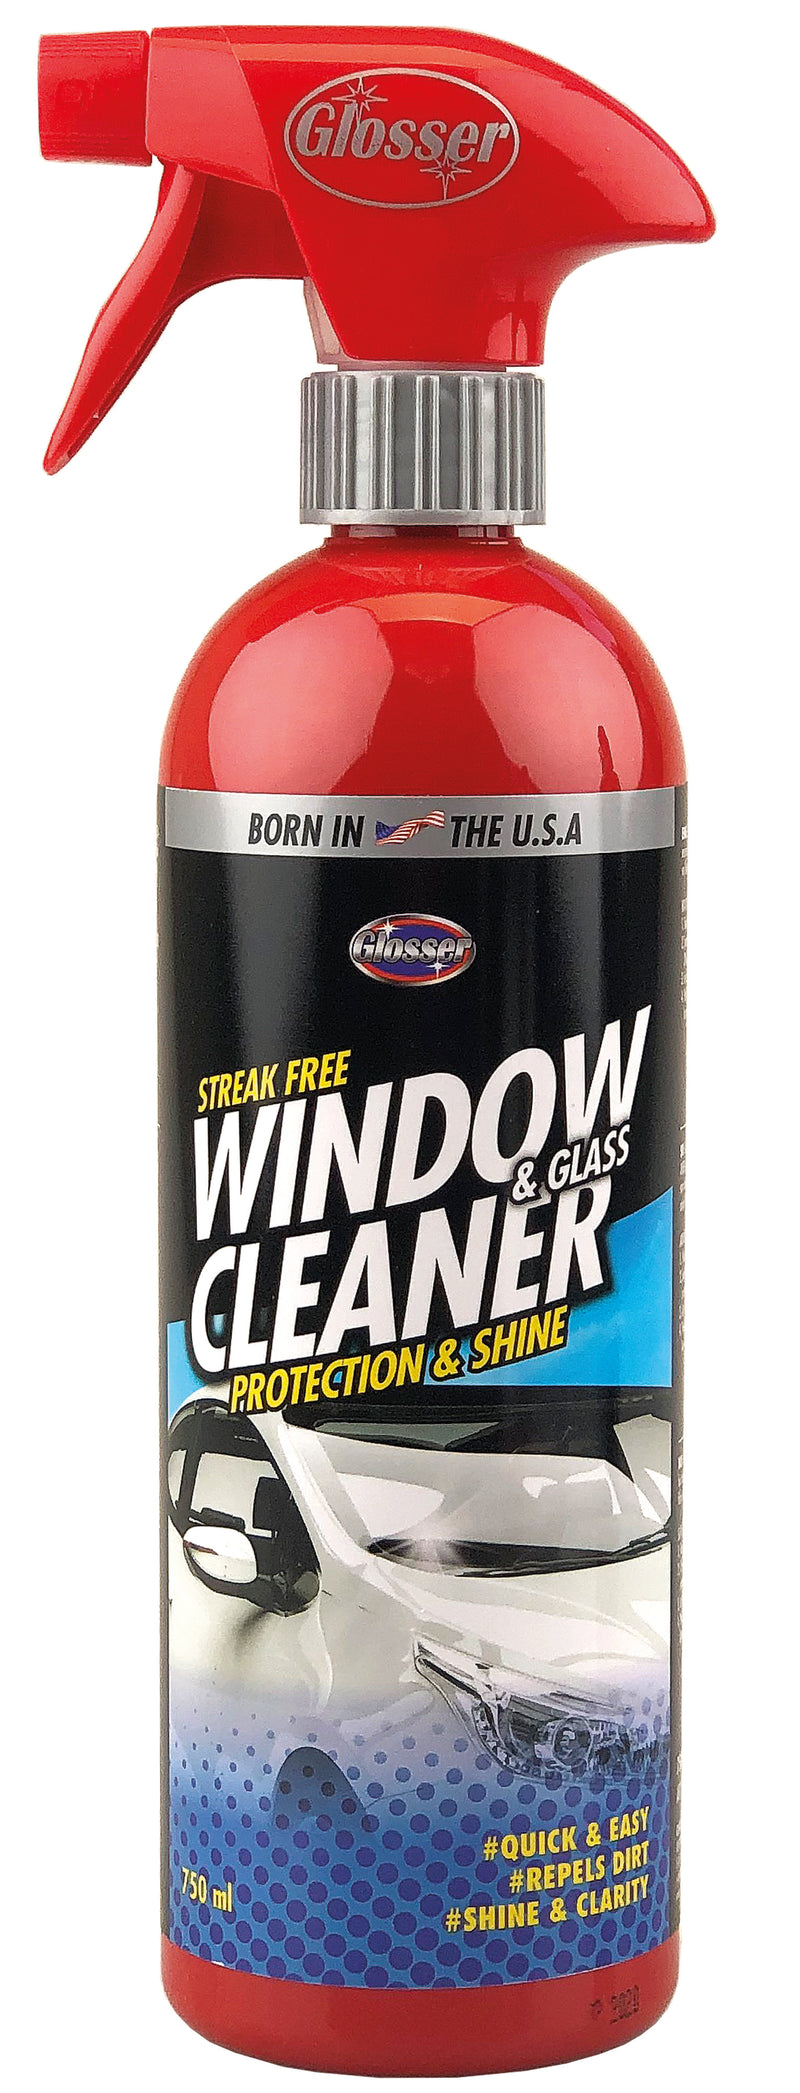 Glosser Glass&Windows Cleaner 750ml